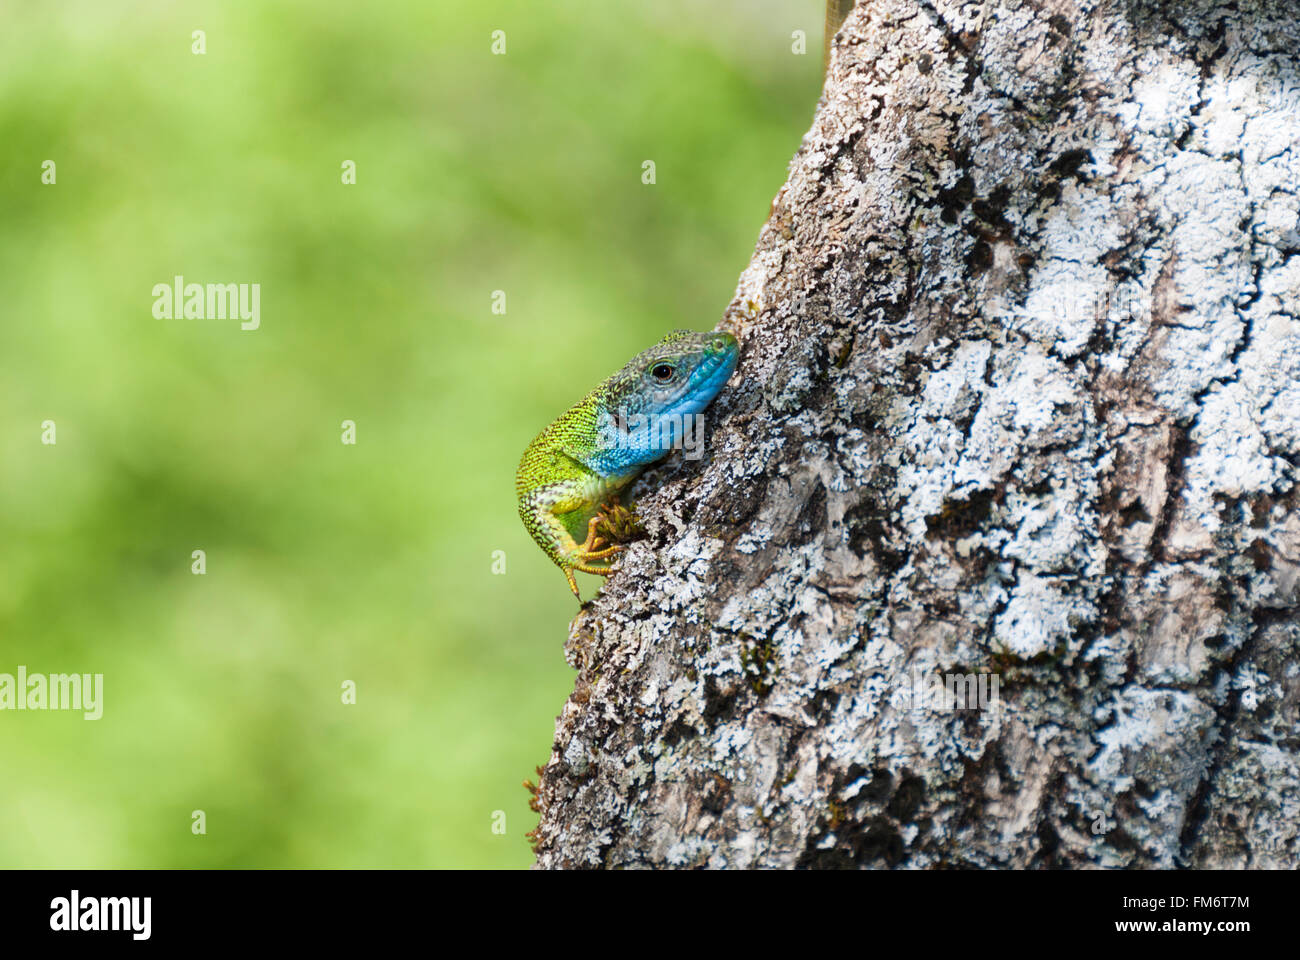 Eine grüne Eidechse mit blauem Kopf versteckt sich hinter einem Baumstamm Stockfoto